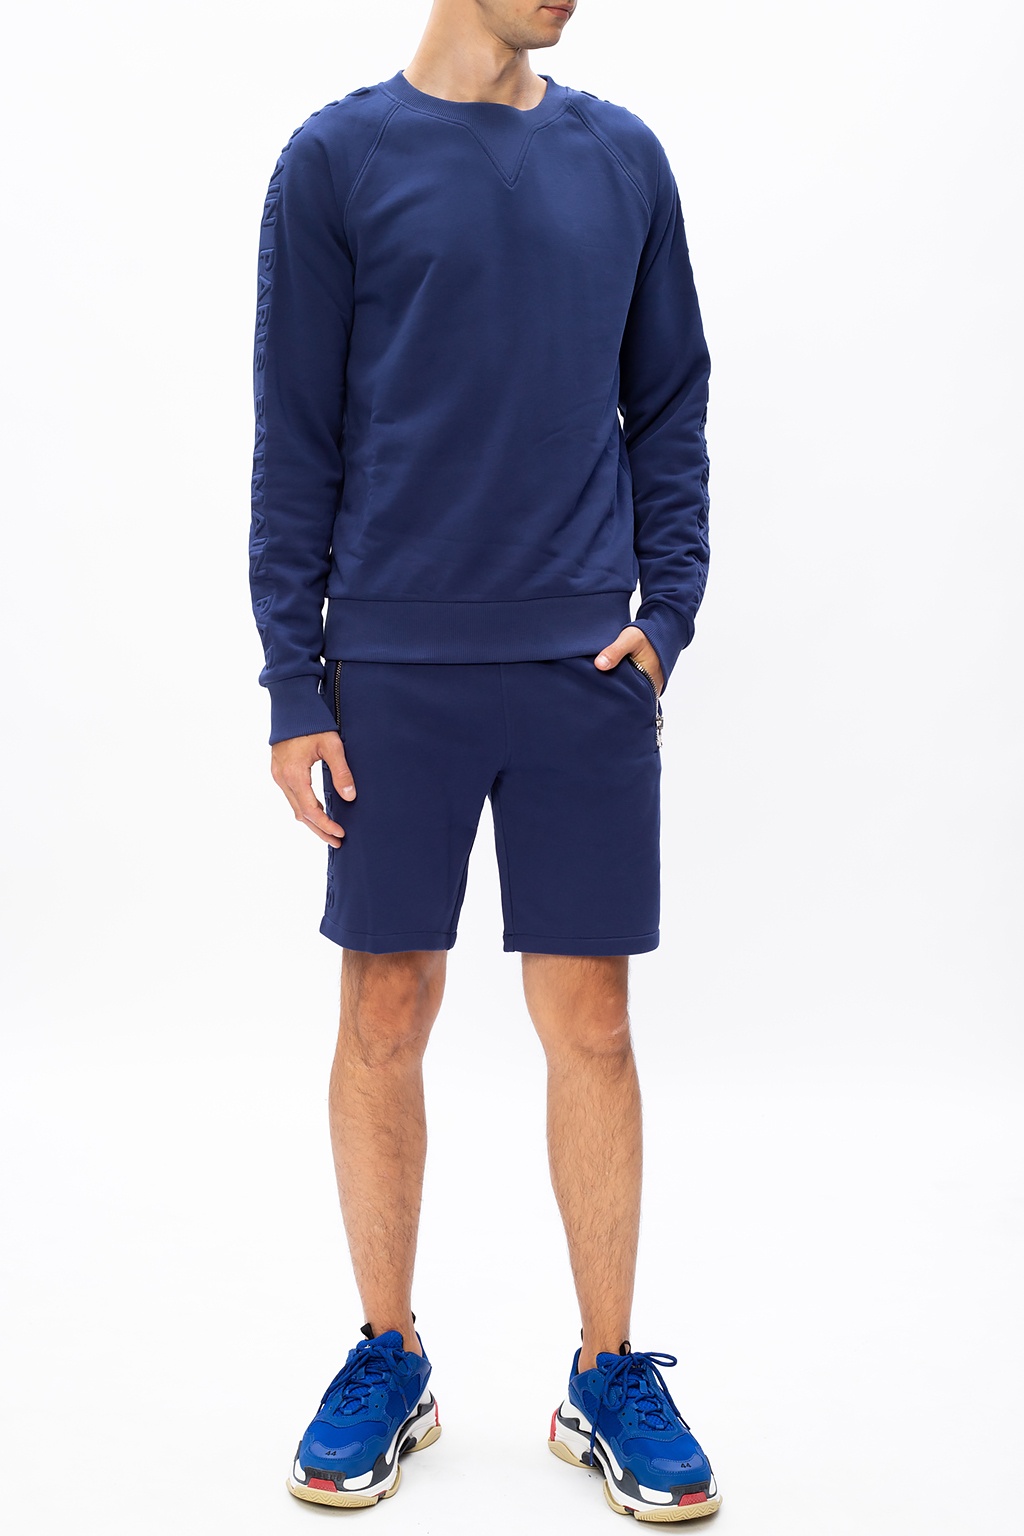 Balmain Sweatshirt with logo | Men's Clothing | IetpShops